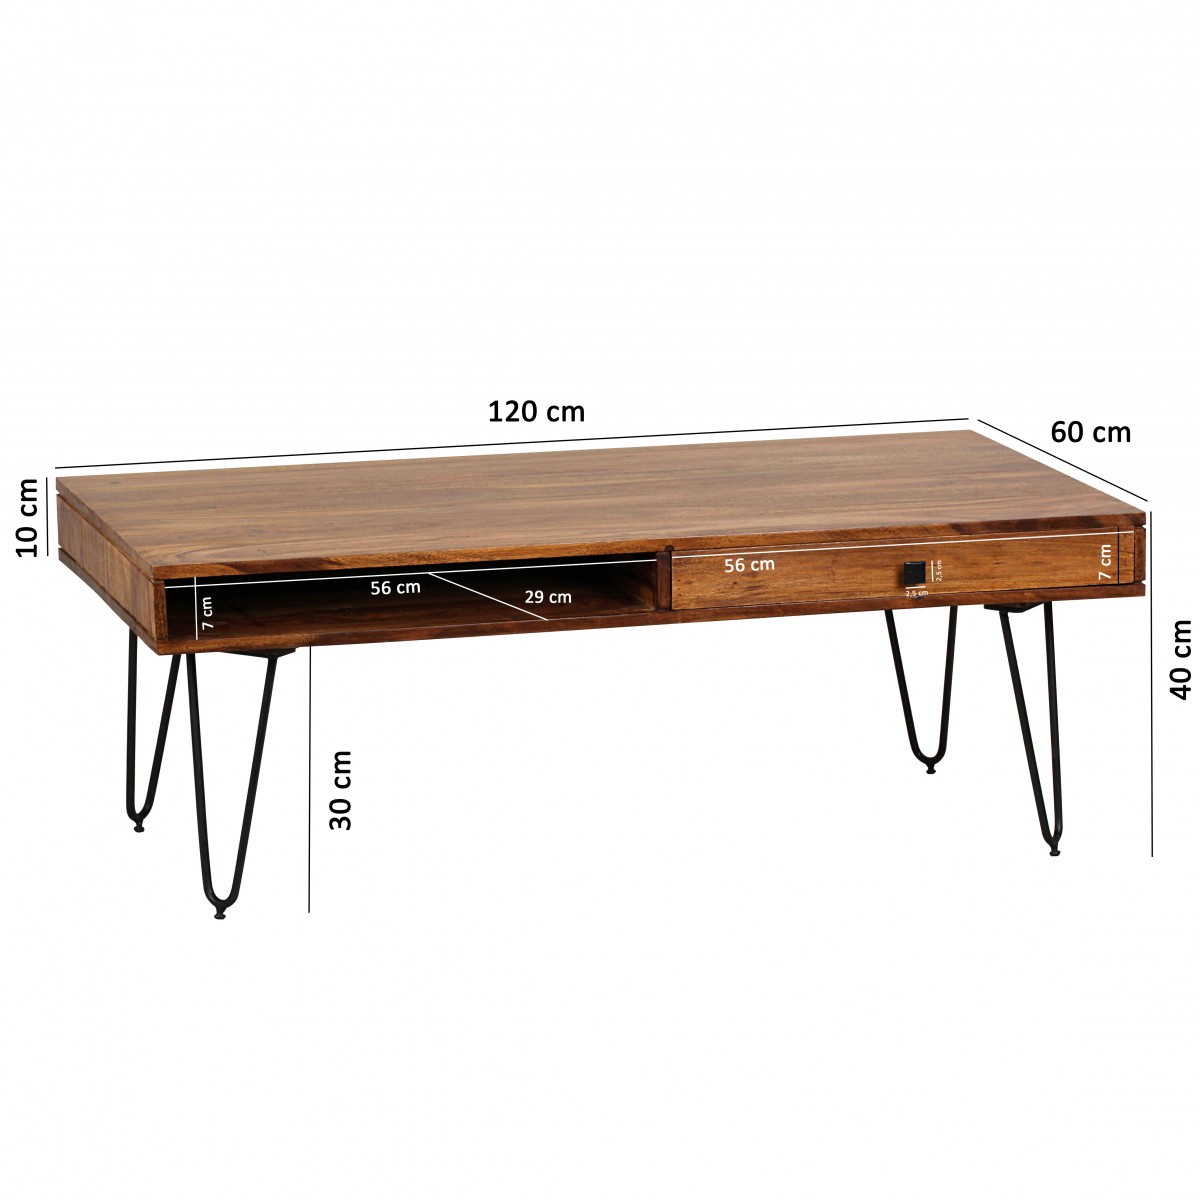 Wohnzimmer-Tisch, Massiv-Holz DiTo24 Lieferung inkl breit, Sheesham | Couchtisch, Wohnling WL1.513 120cm